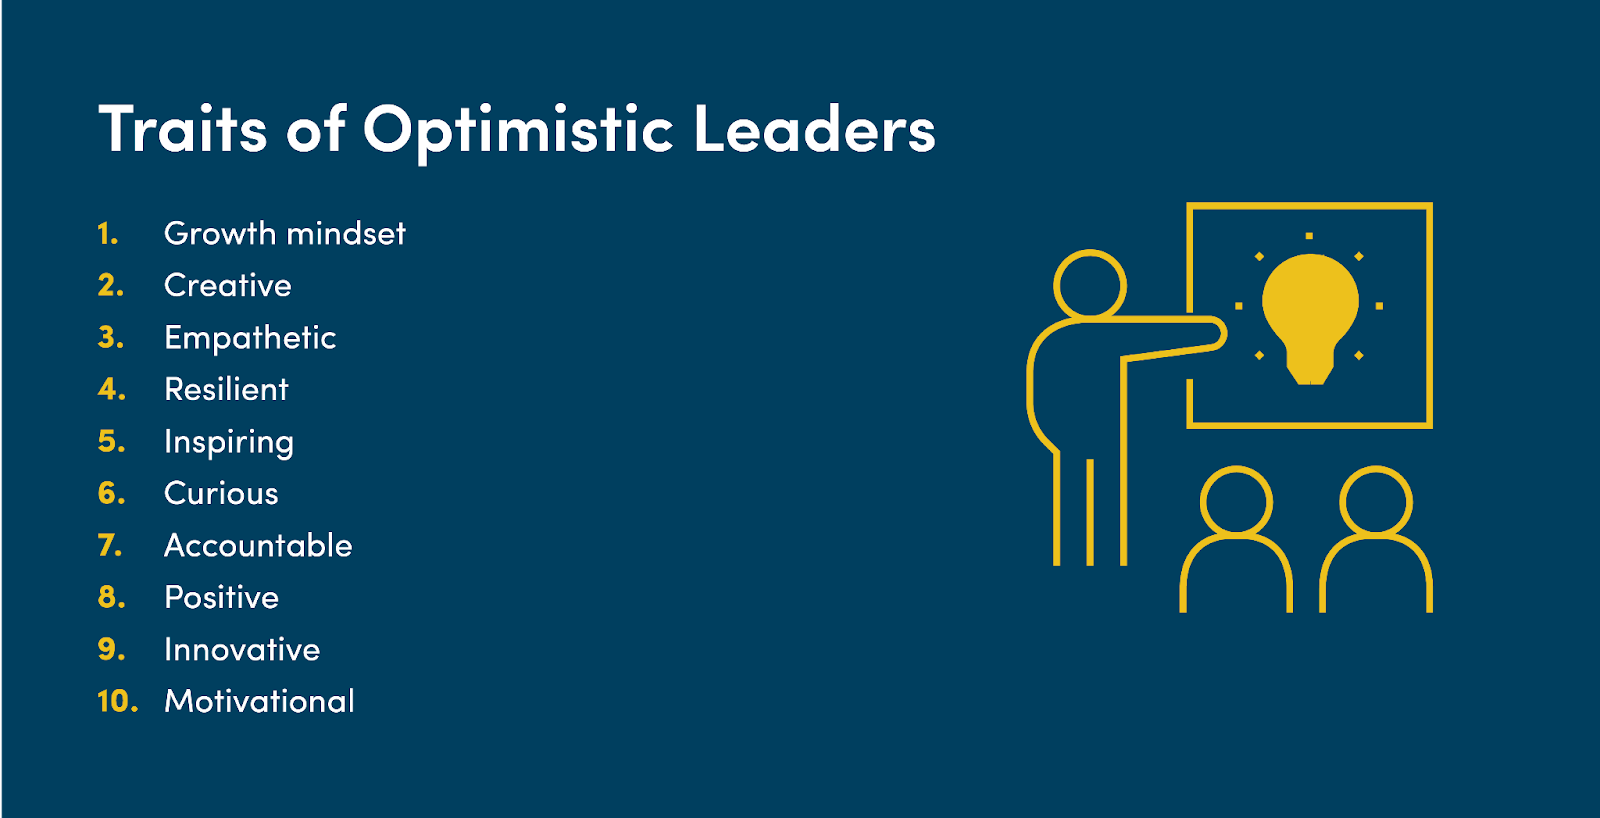 Traits of optimistic leaders